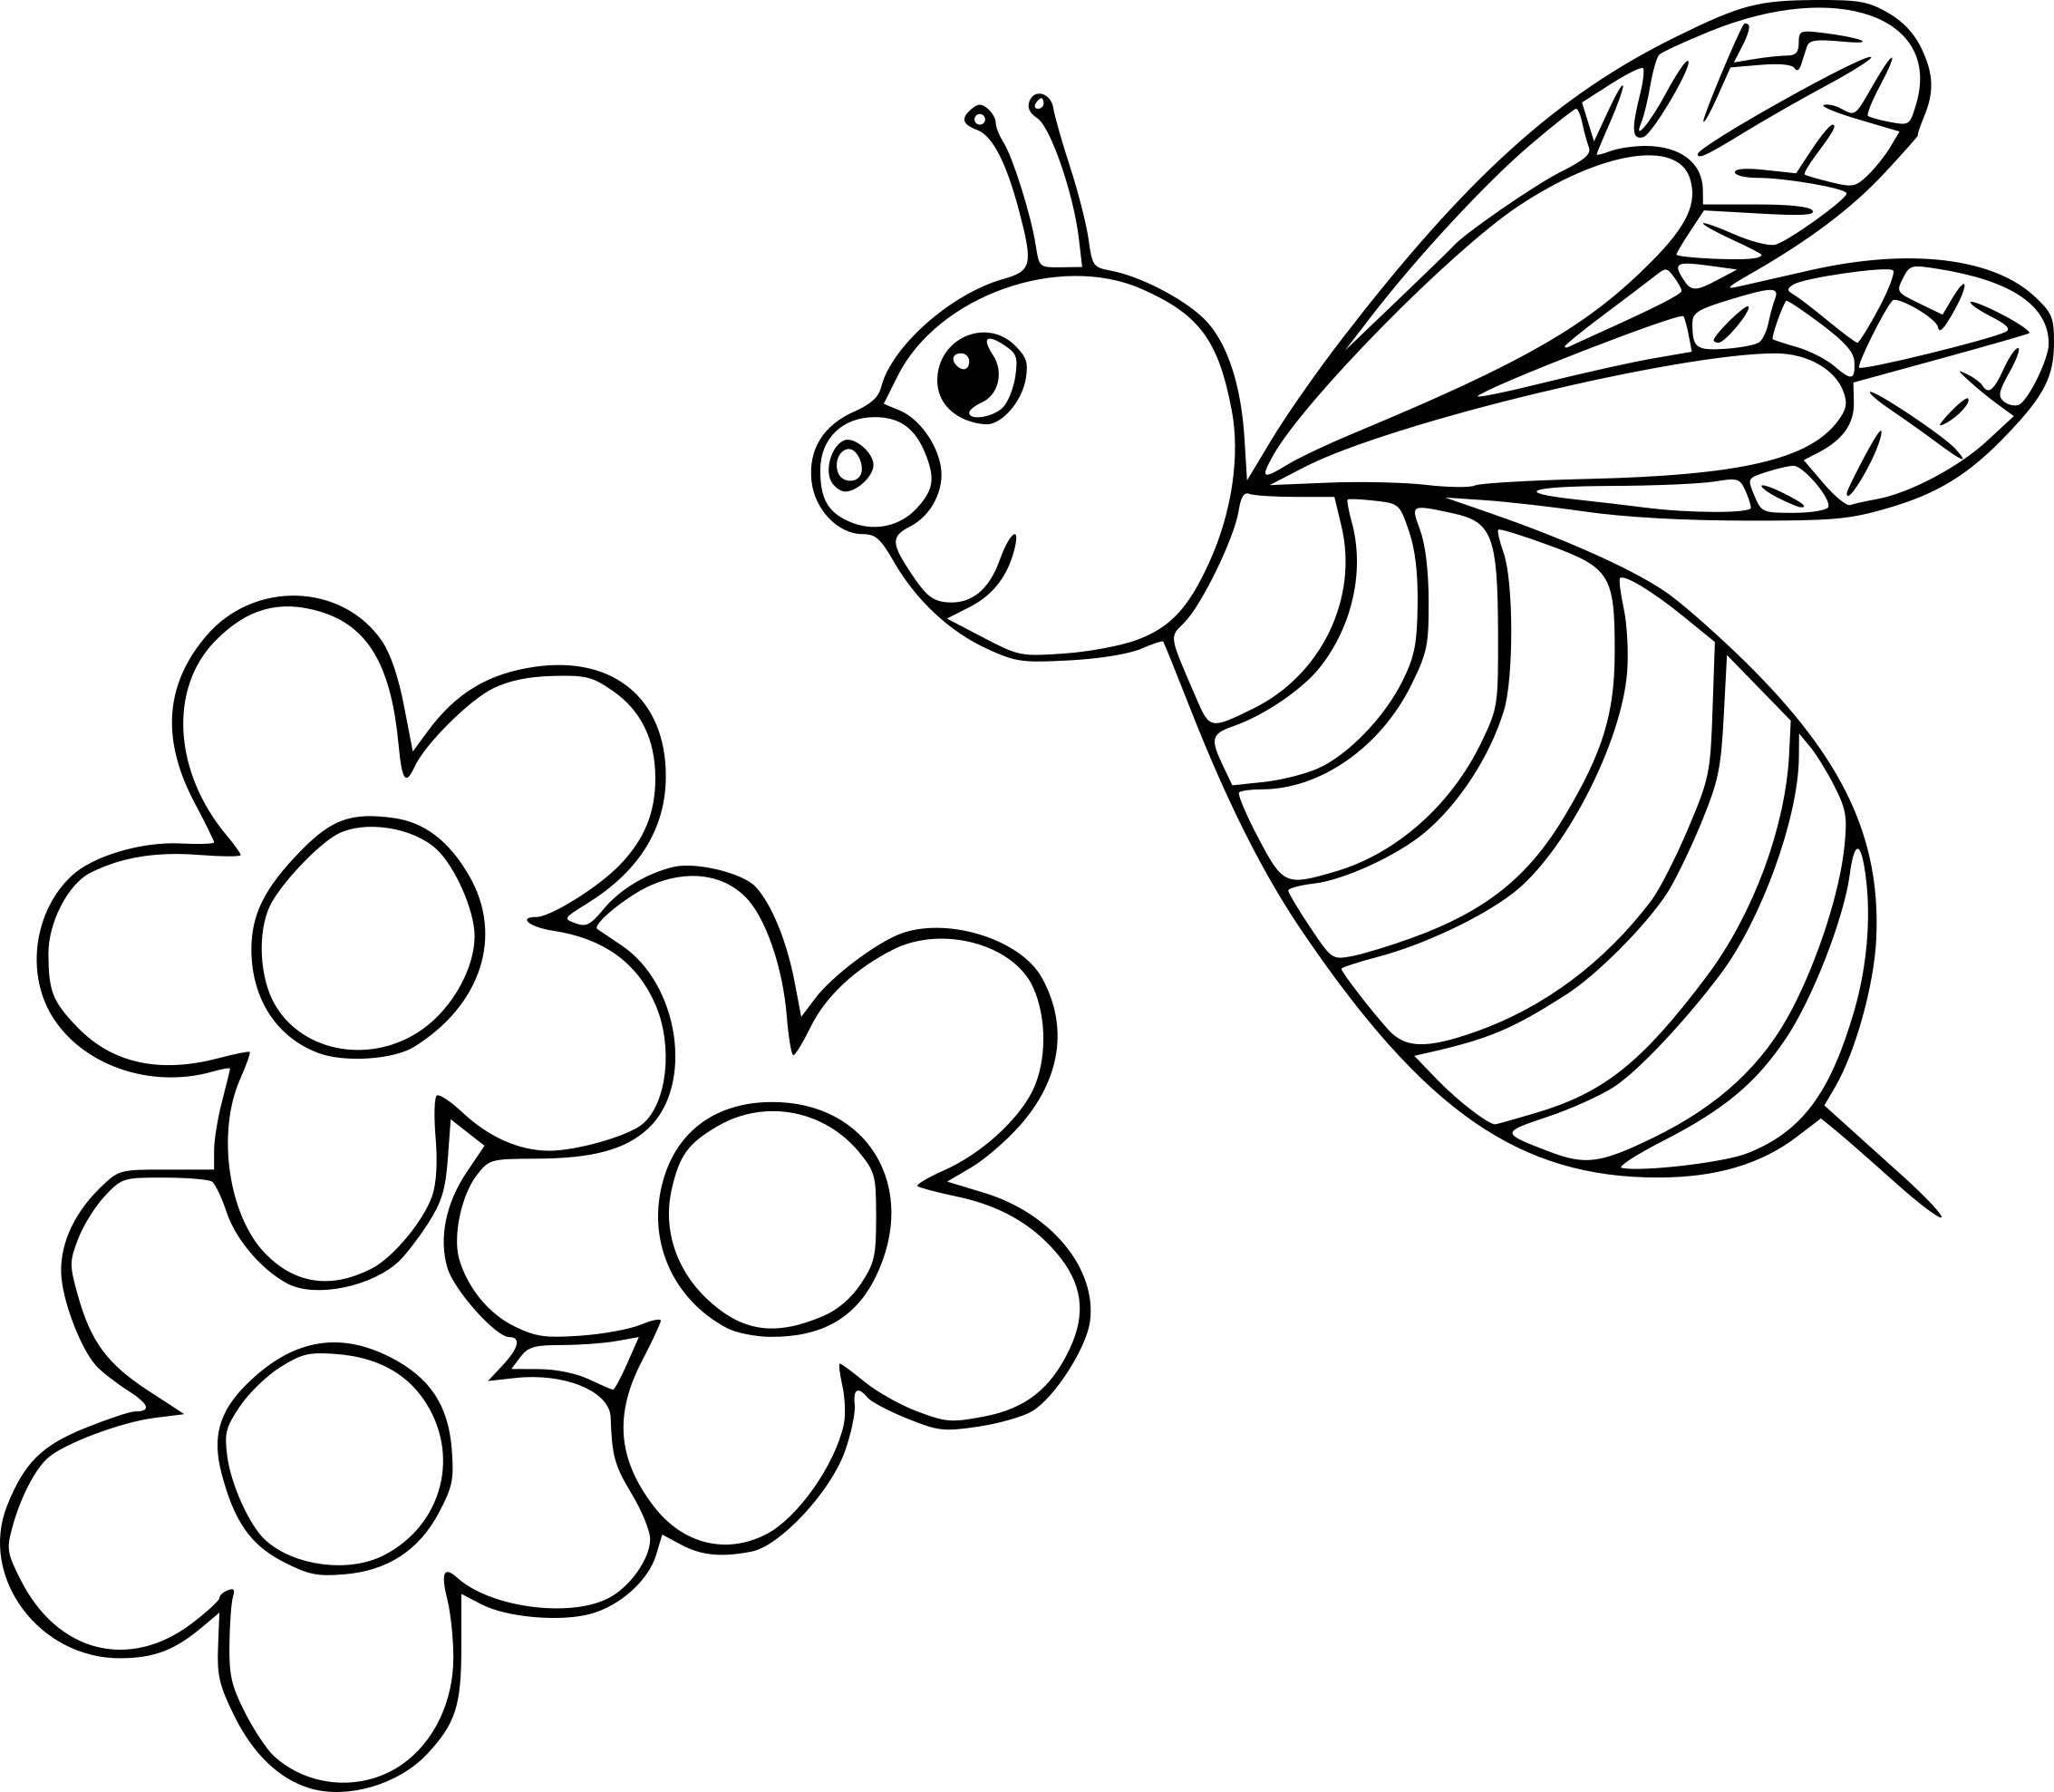 Пластилинография средняя группа шаблоны. Раскраска насекомые для малышей. Насекомые раскраска для детей. Пчела раскраска. Шаблоны для рисования для детей.